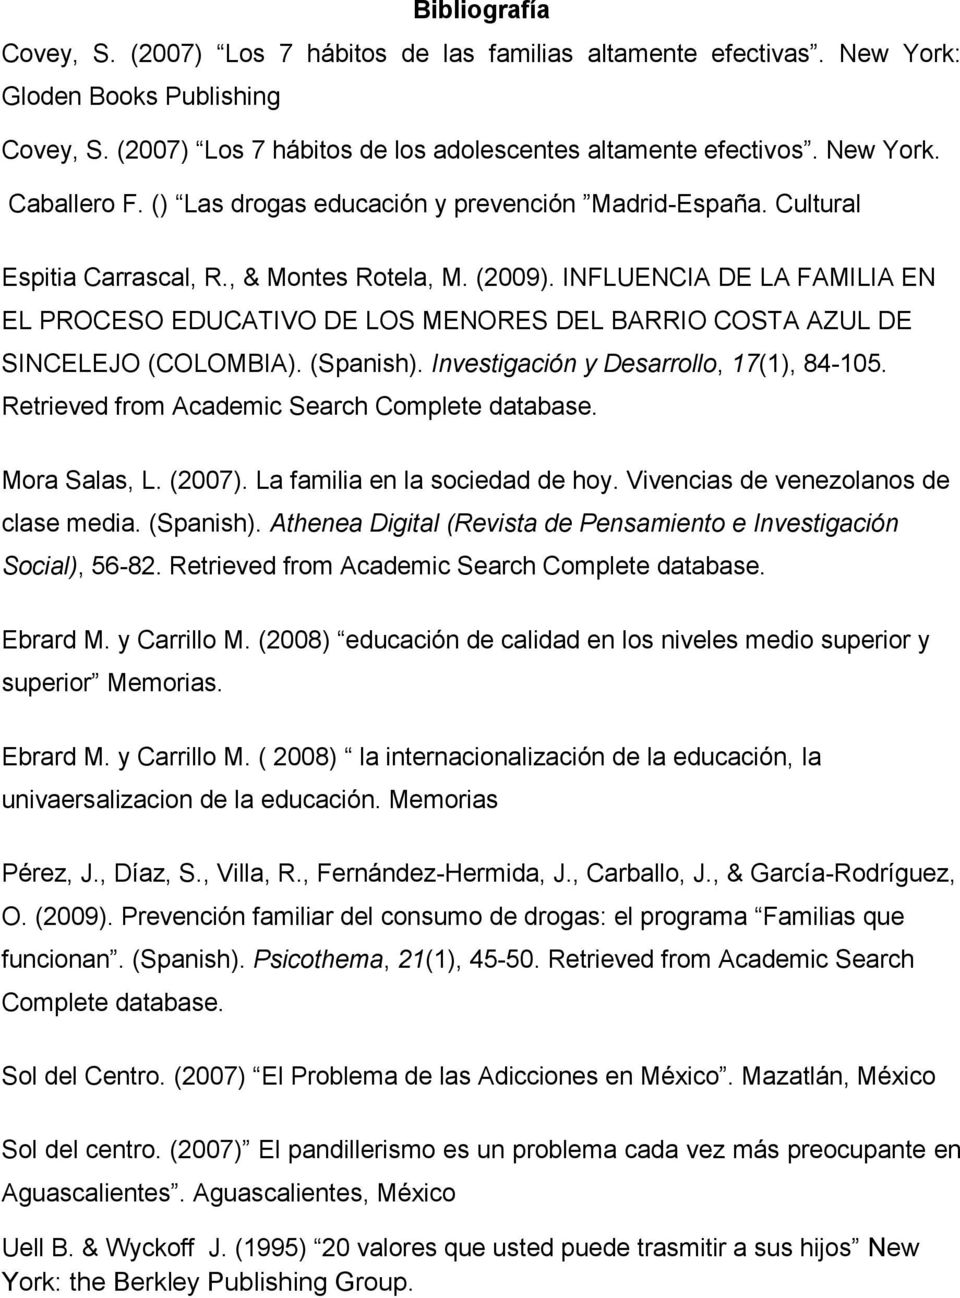 INFLUENCIA DE LA FAMILIA EN EL PROCESO EDUCATIVO DE LOS MENORES DEL BARRIO COSTA AZUL DE SINCELEJO (COLOMBIA). (Spanish). Investigación y Desarrollo, 17(1), 84-105.